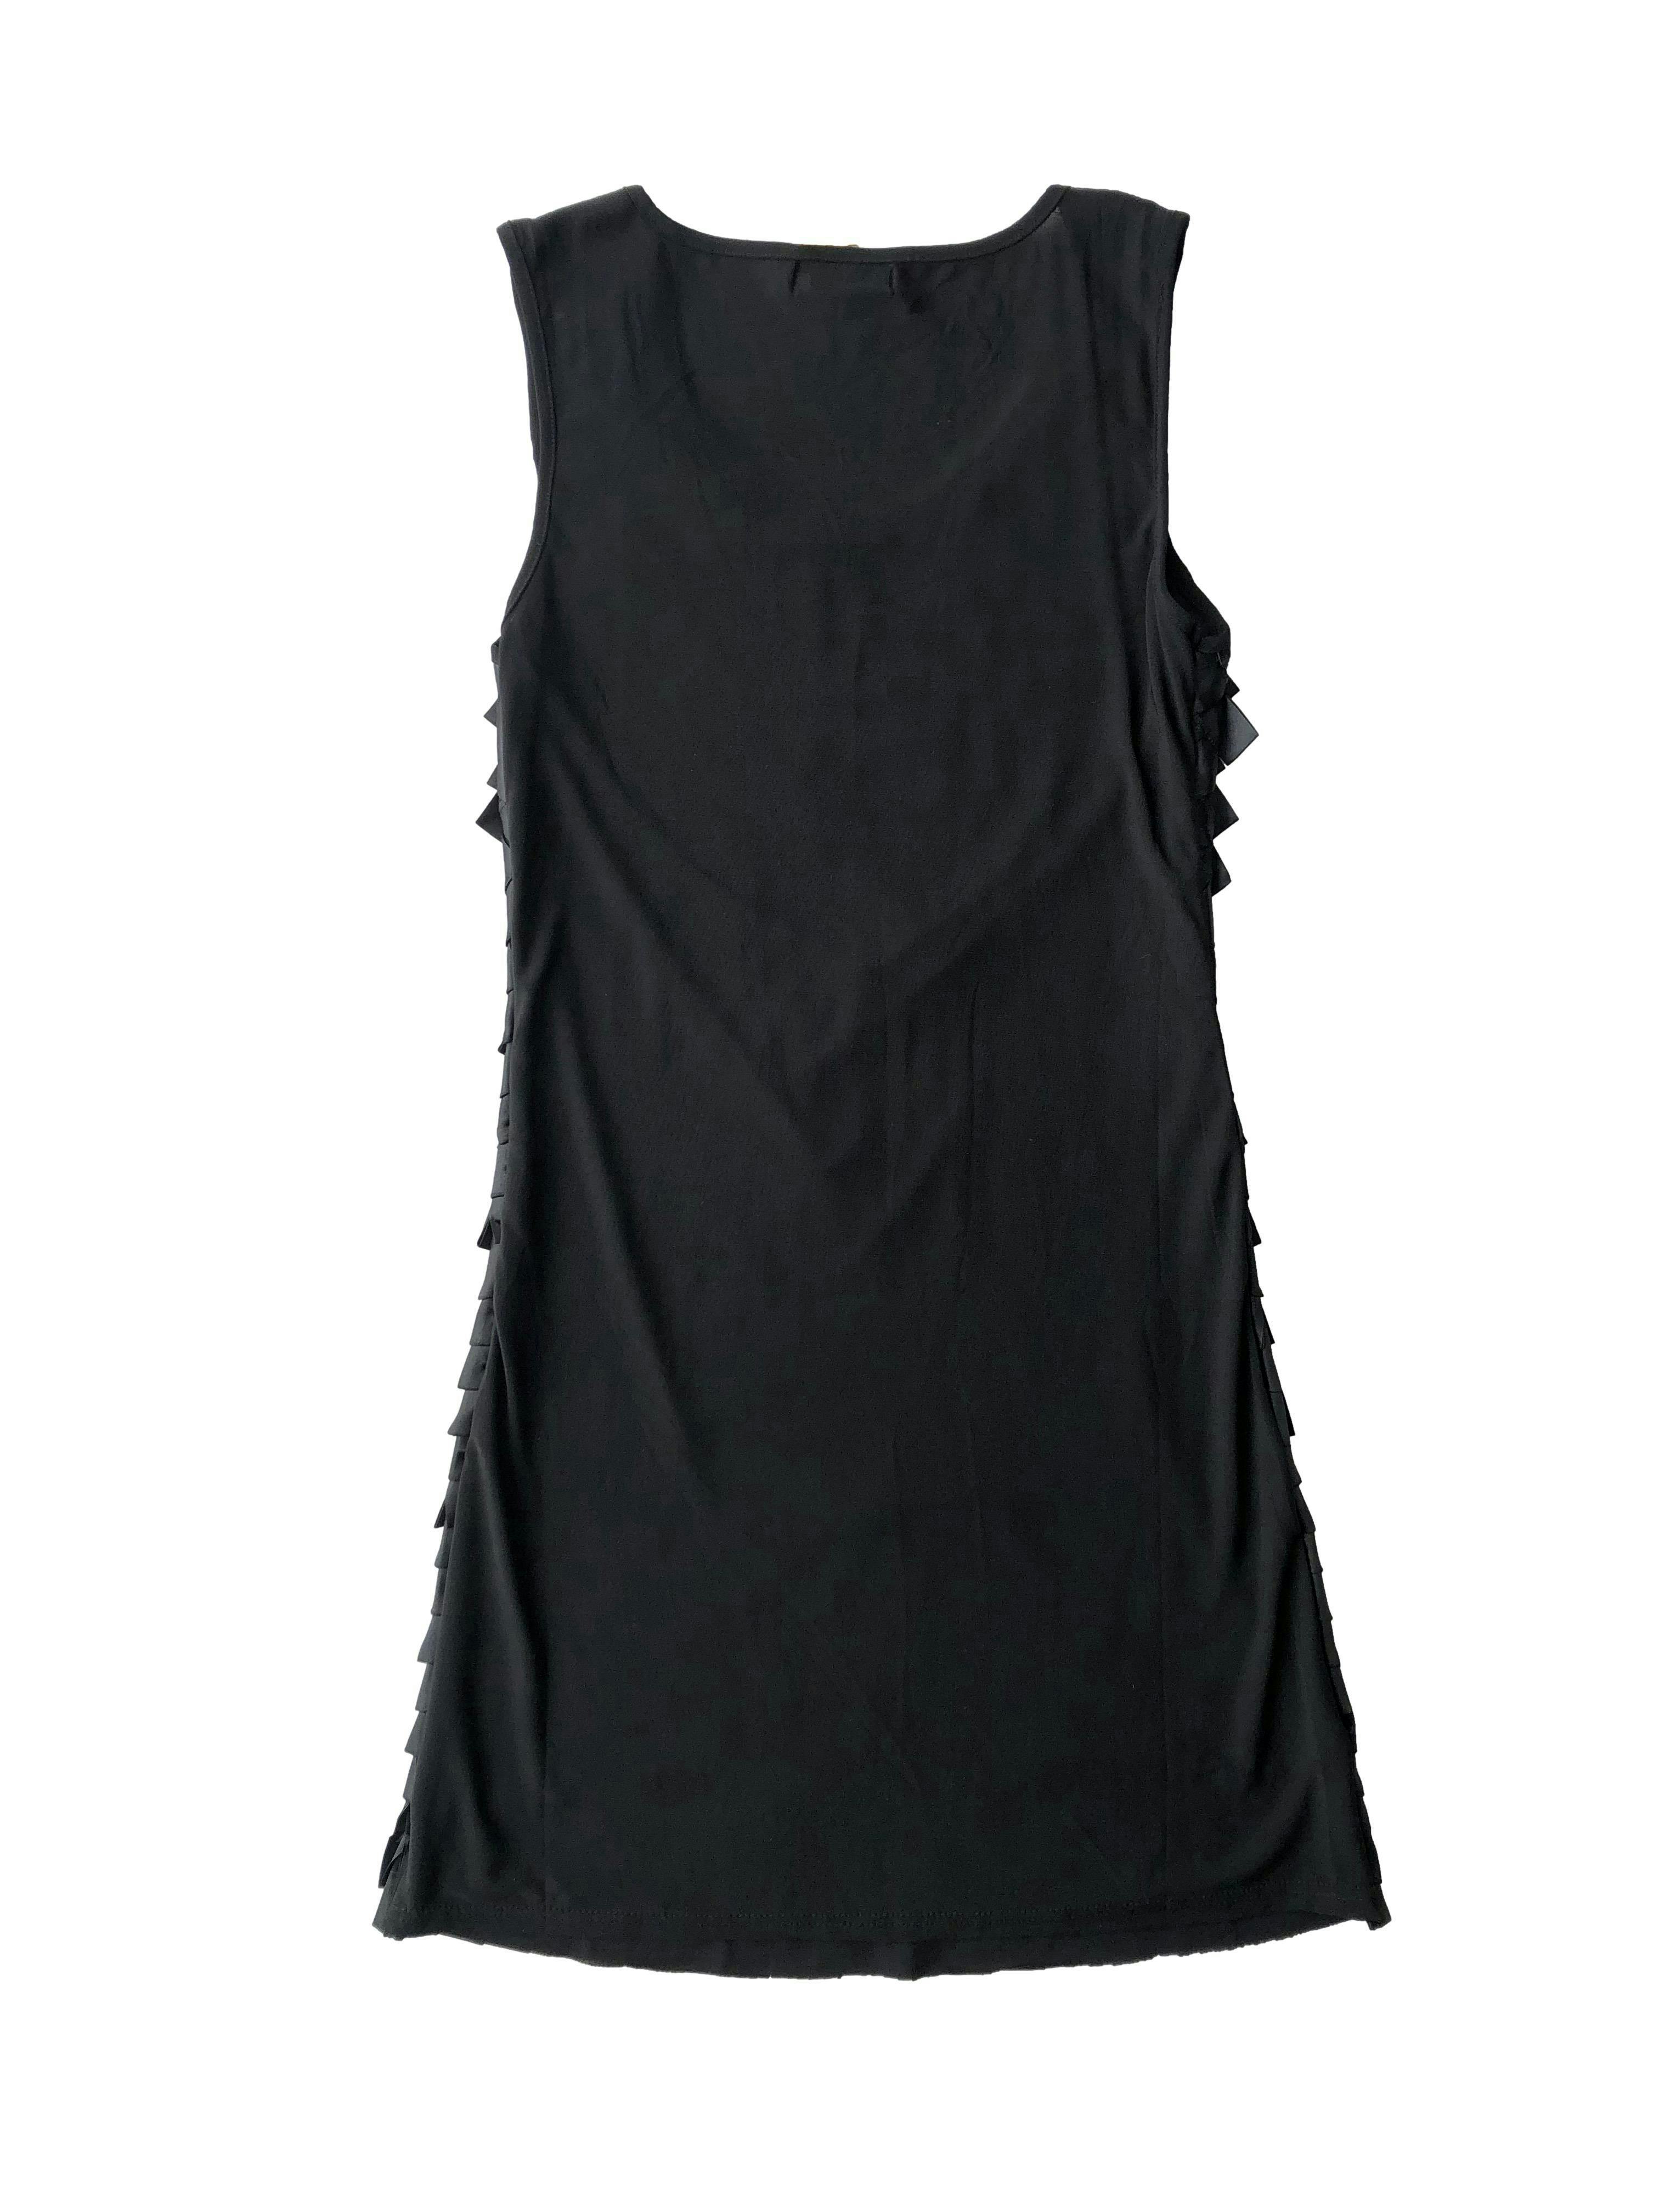 Vestido negro de tul con forro y aplicación de cintos a modo de flecos. Busto 85cm sin estirar, Largo 90cm.